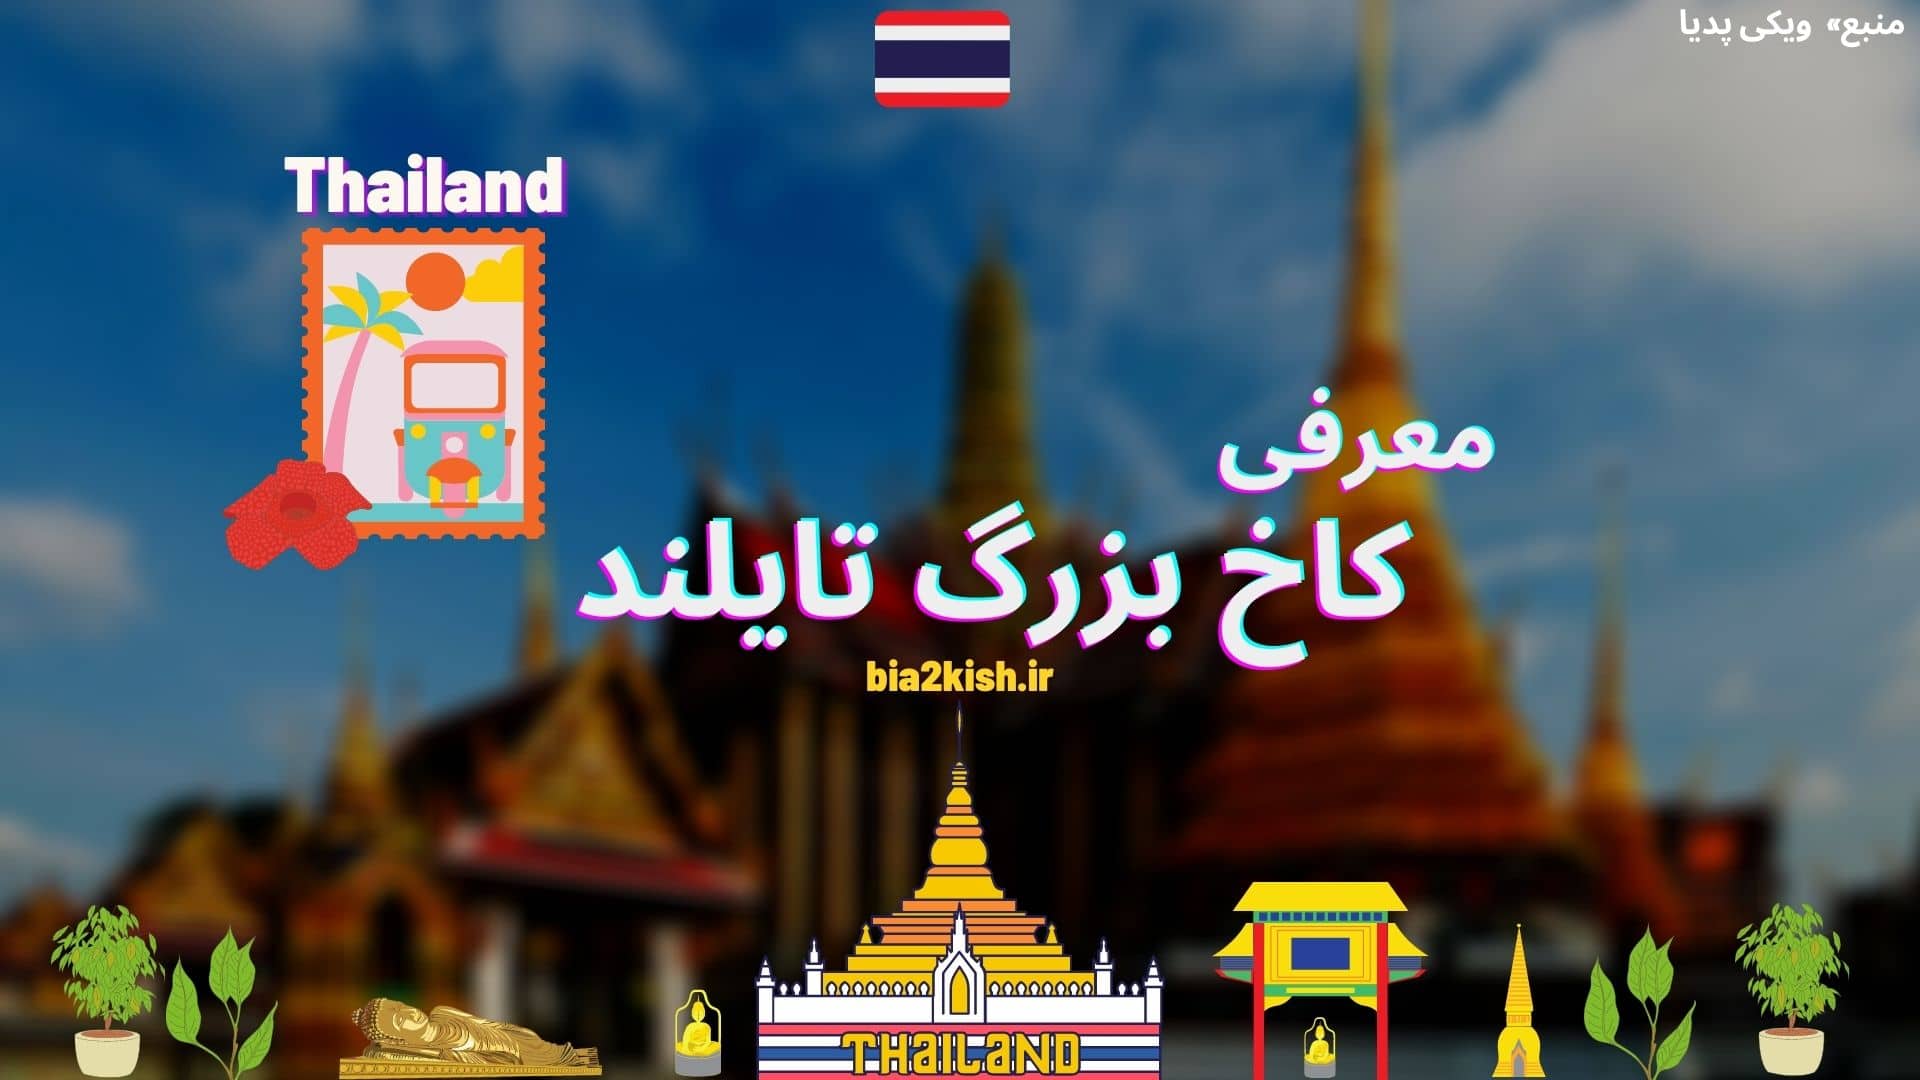 معرفی کاخ بزرگ تایلند